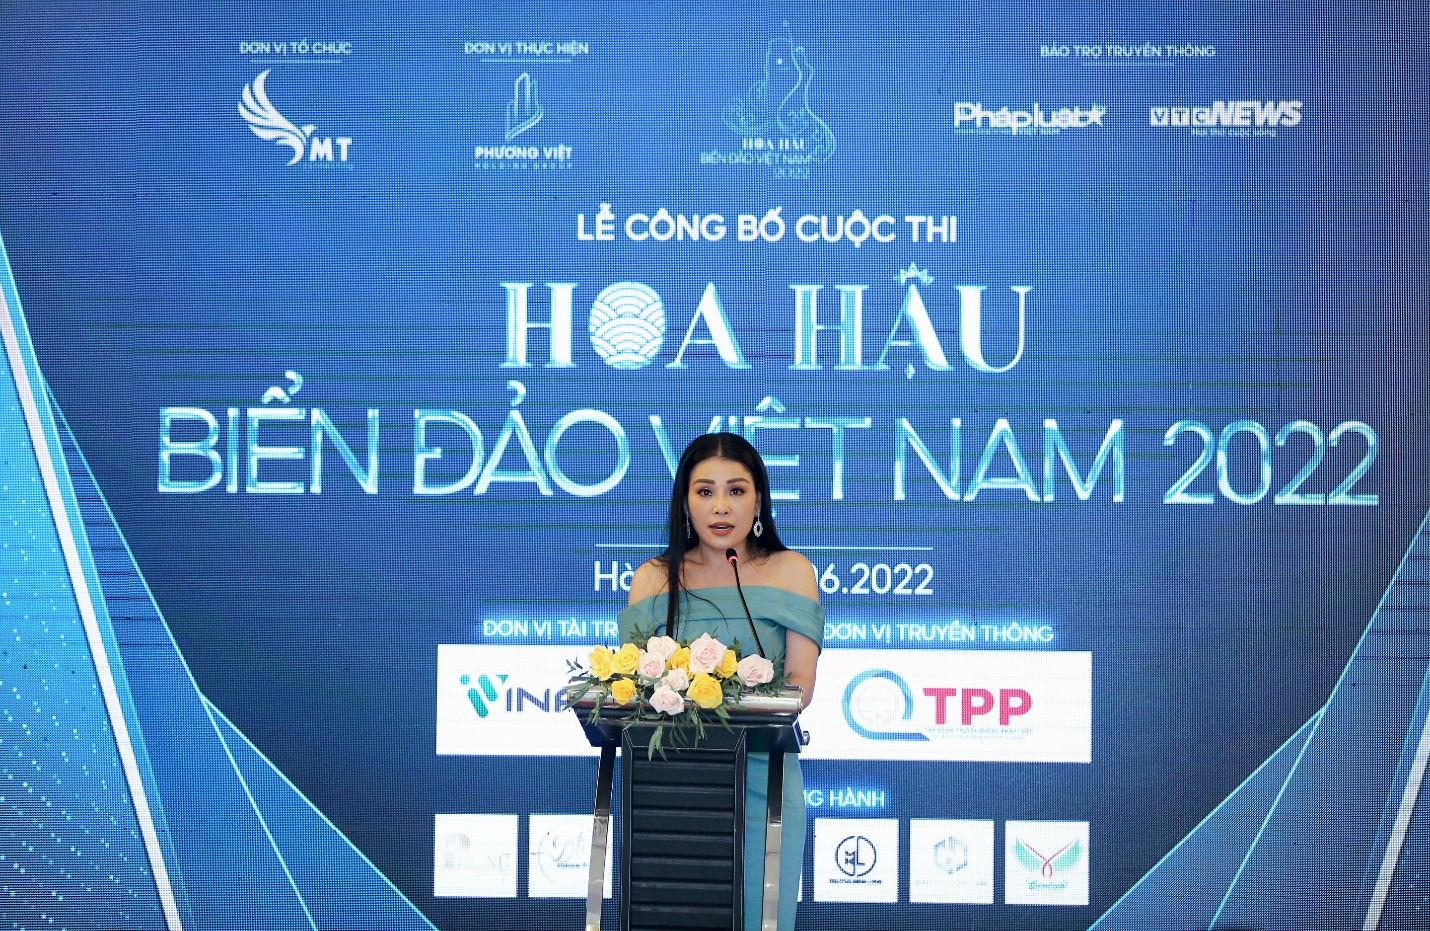 Hoa hậu Biển Đảo Việt Nam 2022: Trưởng ban tổ chức Đàm Hương Thủy và những tâm huyết dành cho chương trình - Ảnh 1.